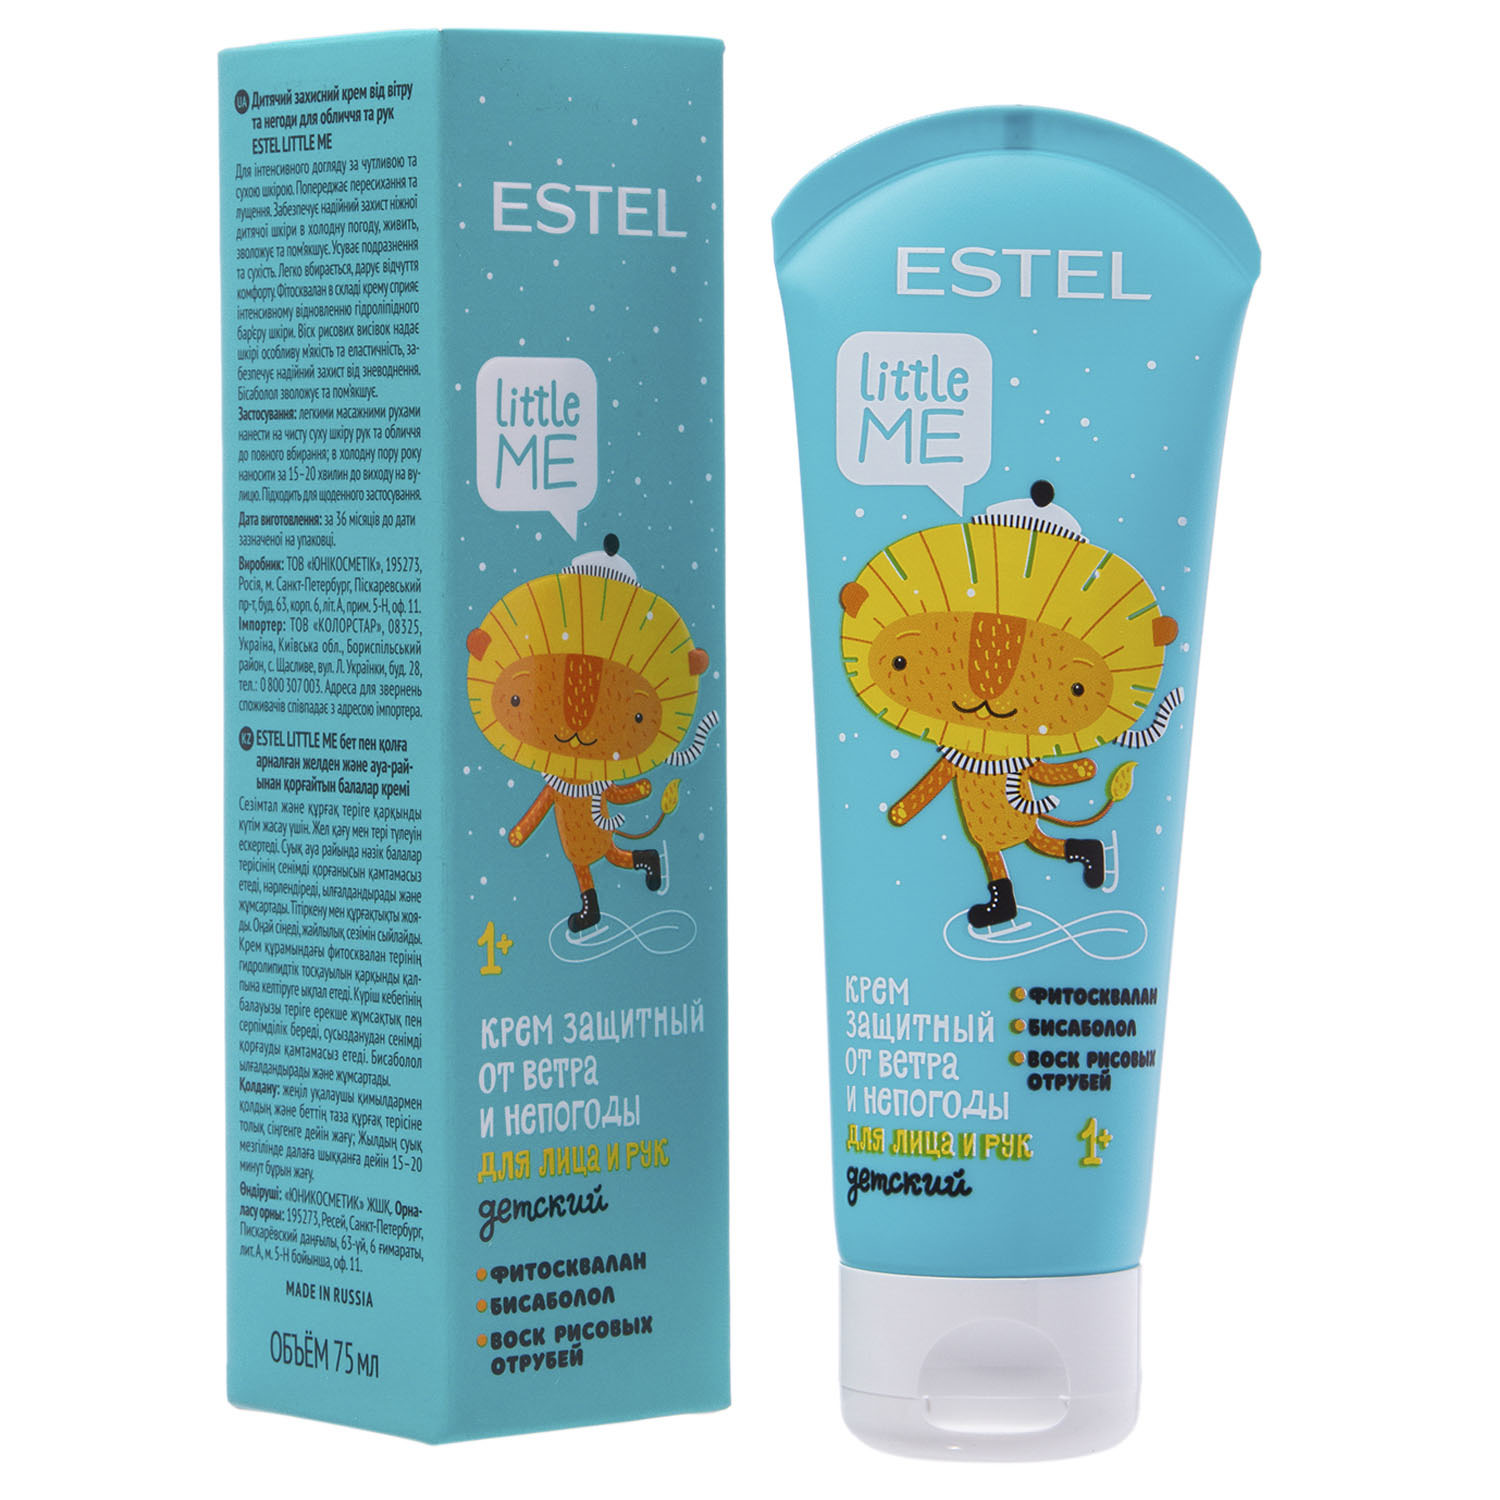 Estel Детский защитный крем от ветра и непогоды для лица и рук, 75 мл (Estel, Little me) цена и фото